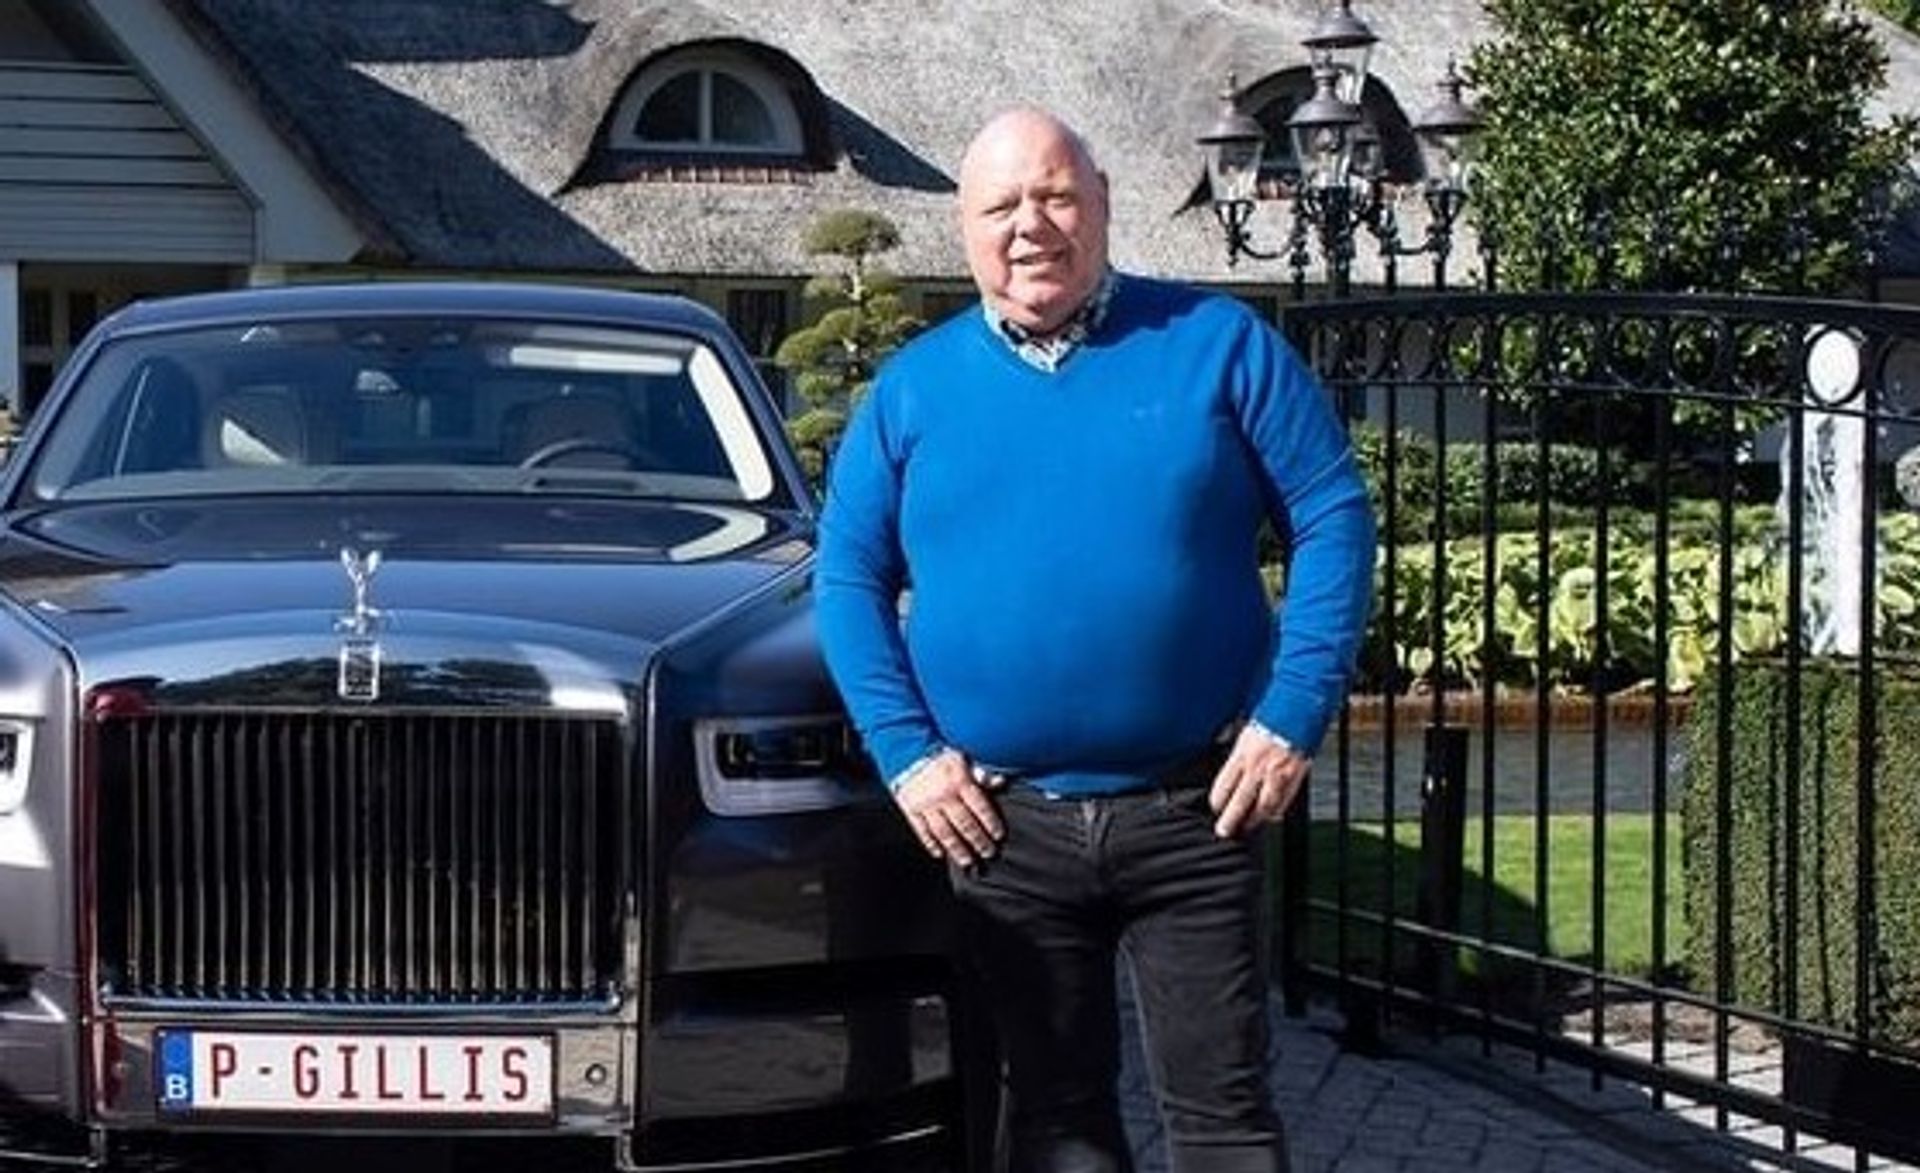 Peter Gillis verkoopt Rolls-Royce